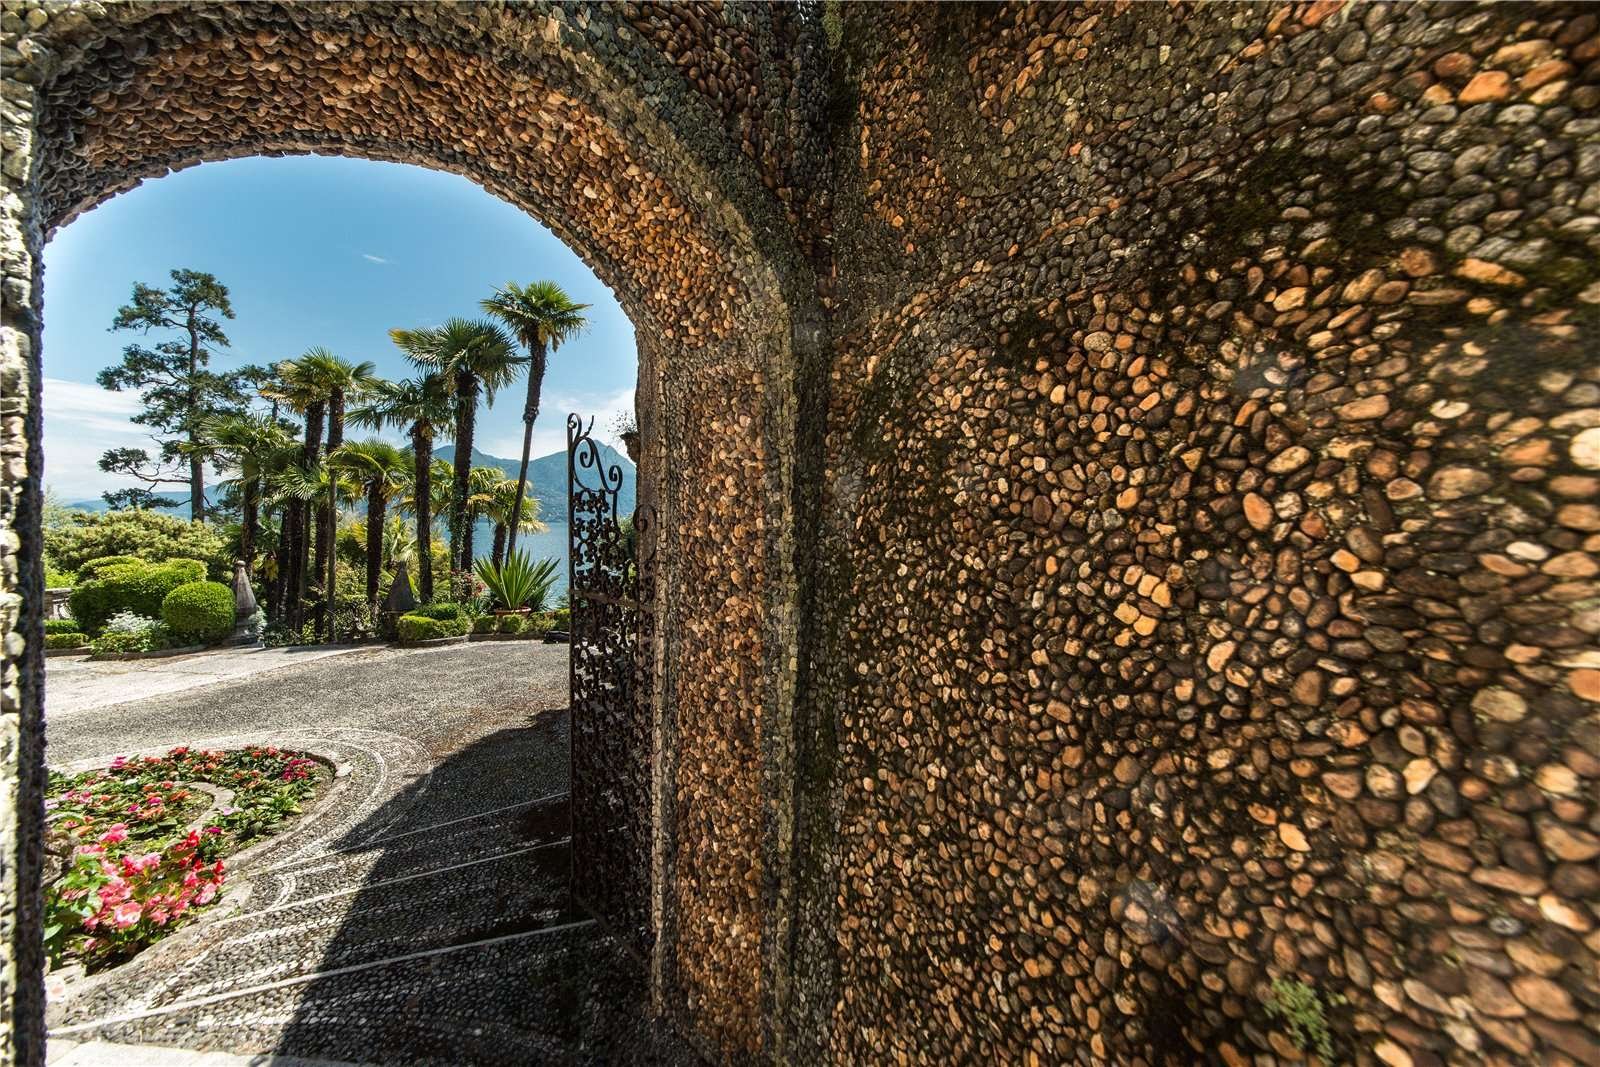 Francis YorkVilla L'Eremitaggio: Historic Villa On Lake Maggiore 19.jpg